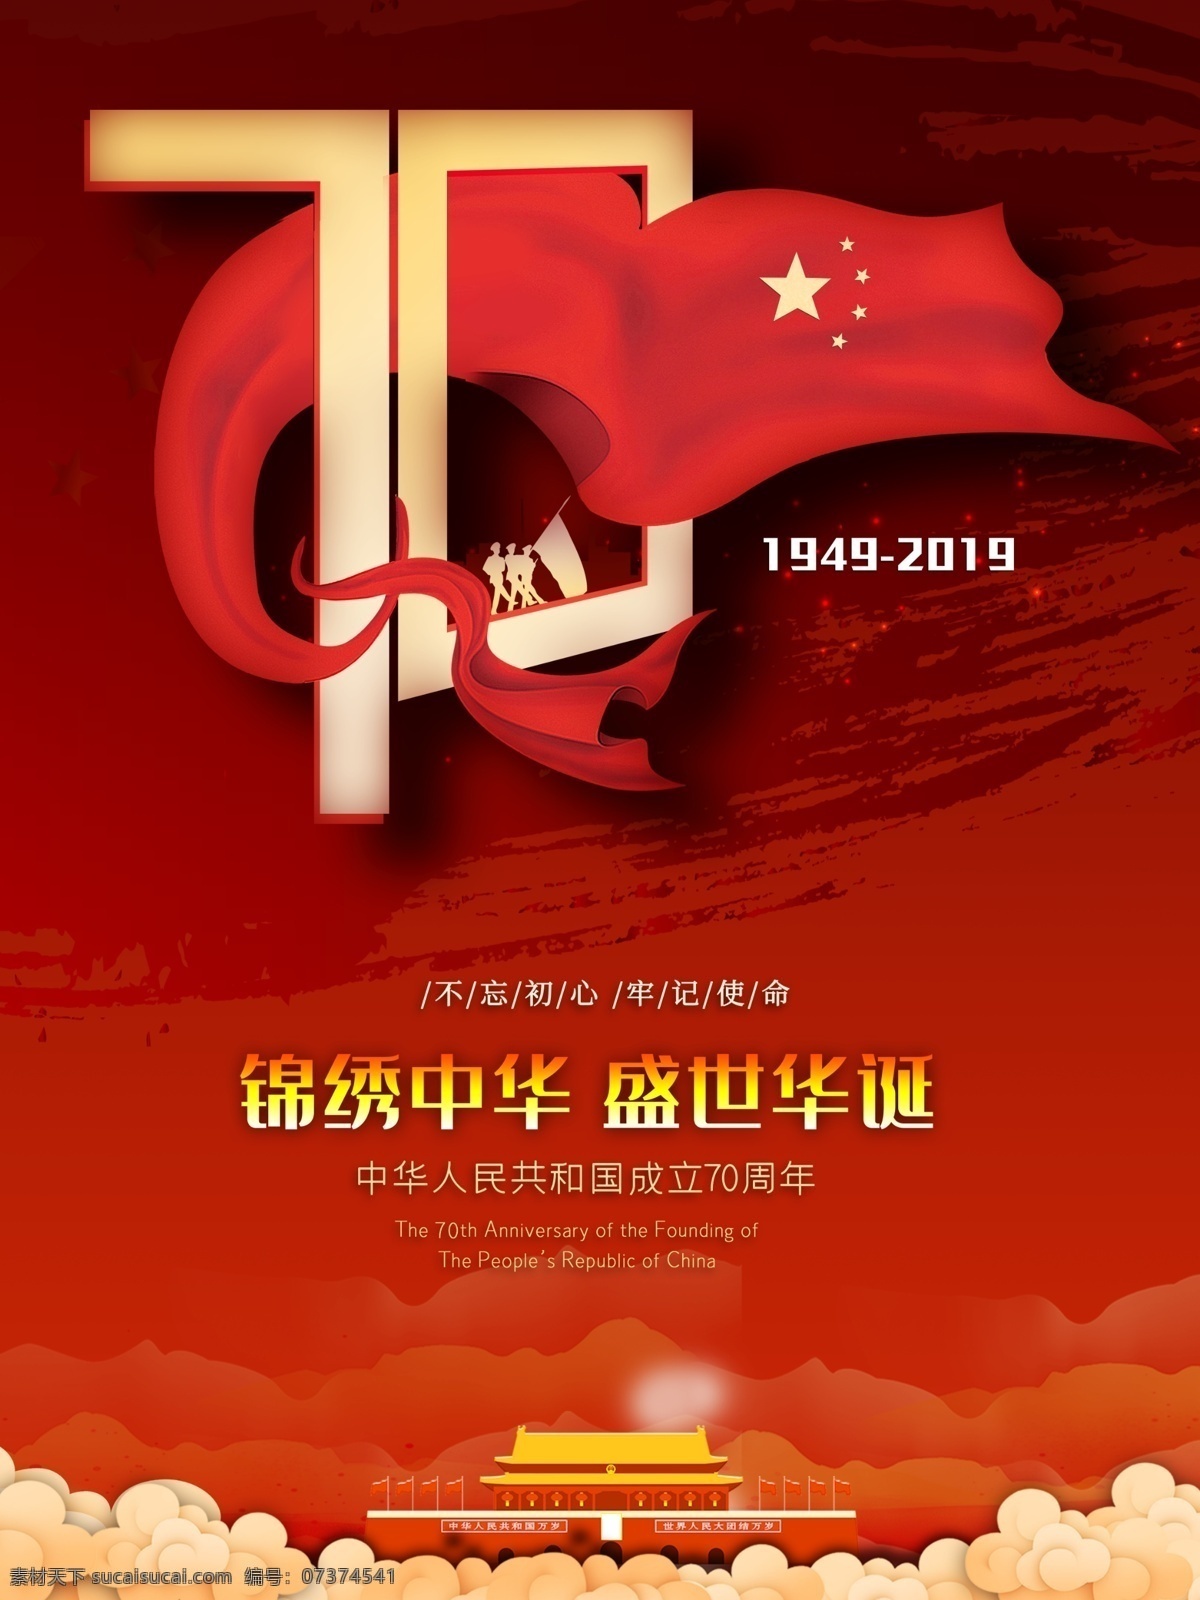 国庆 周年 纪念日 海报 70周年 建国 中华人民共和国 华诞 红色 喜庆 节日海报